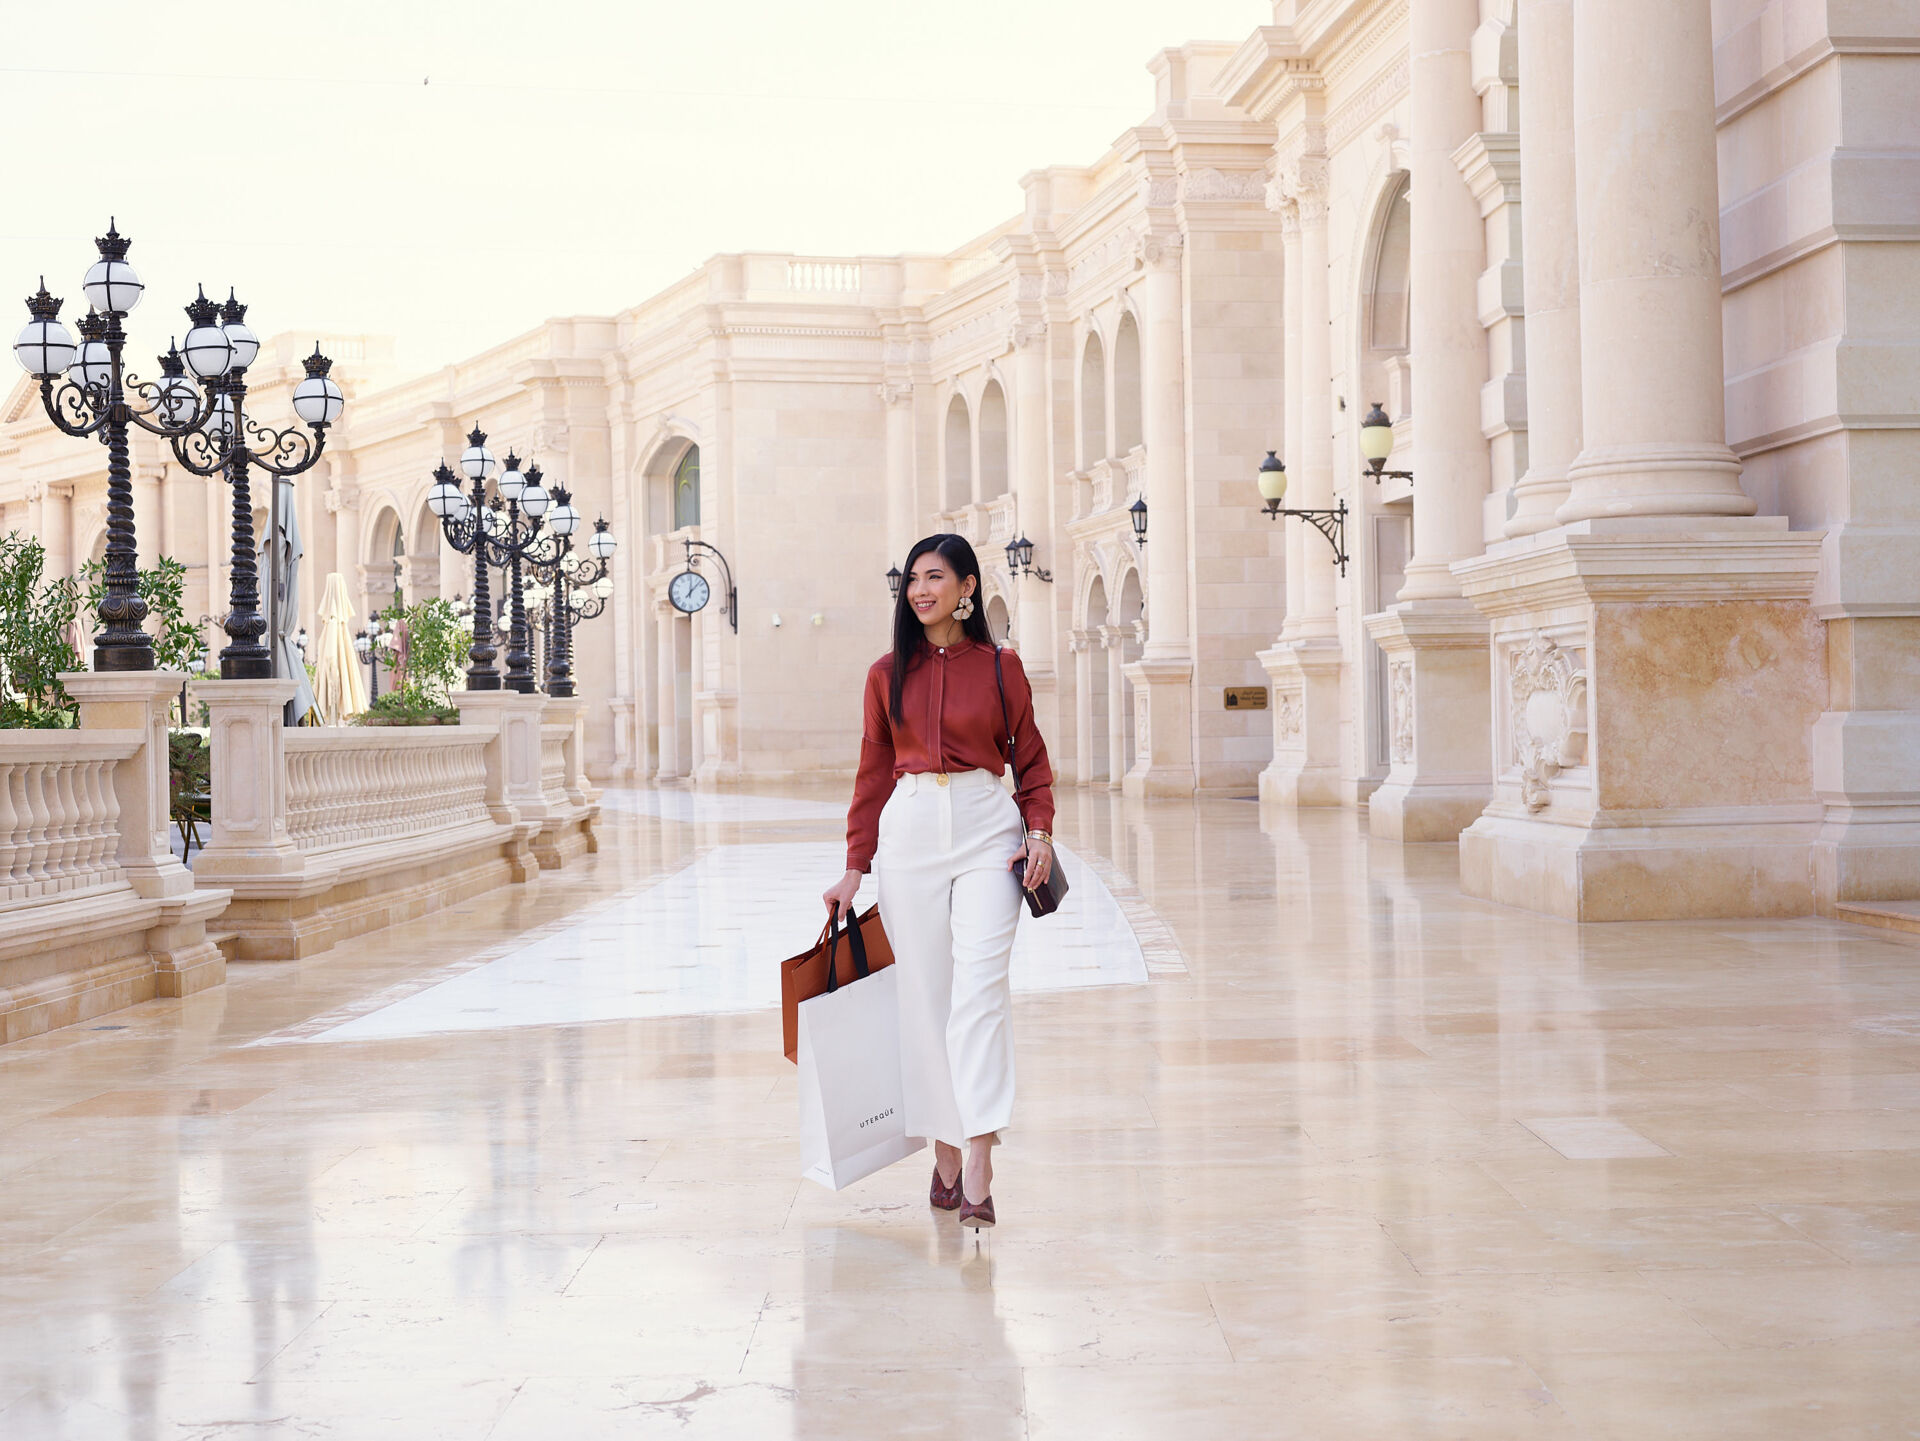 Noor al Mazroei | Visit Qatar